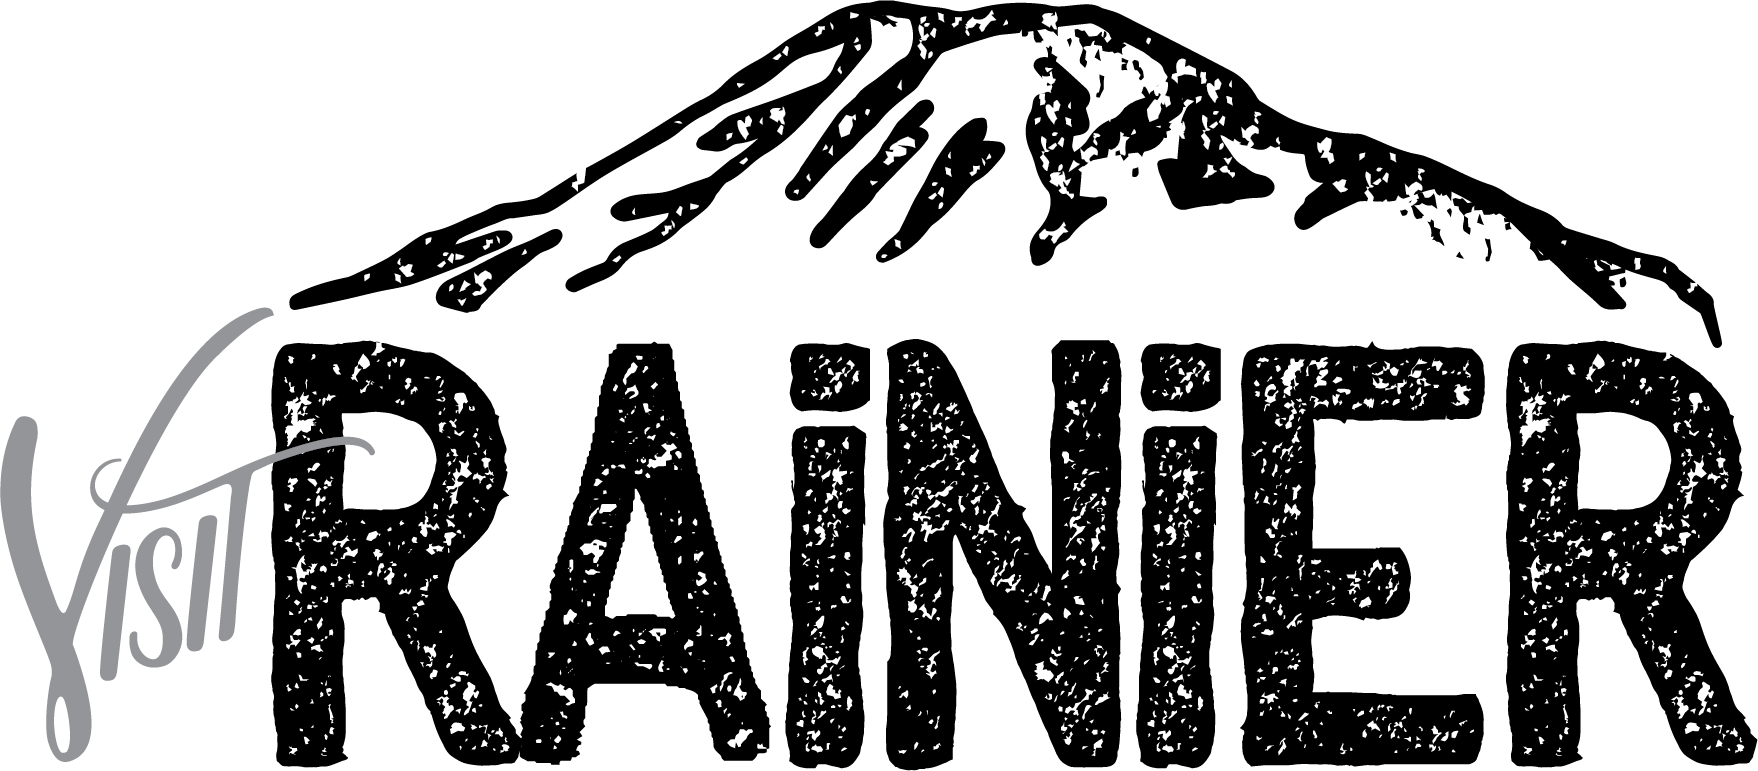 Rainier Logo - Visit Rainier | The Official Site Of Mt. Rainier Tourism